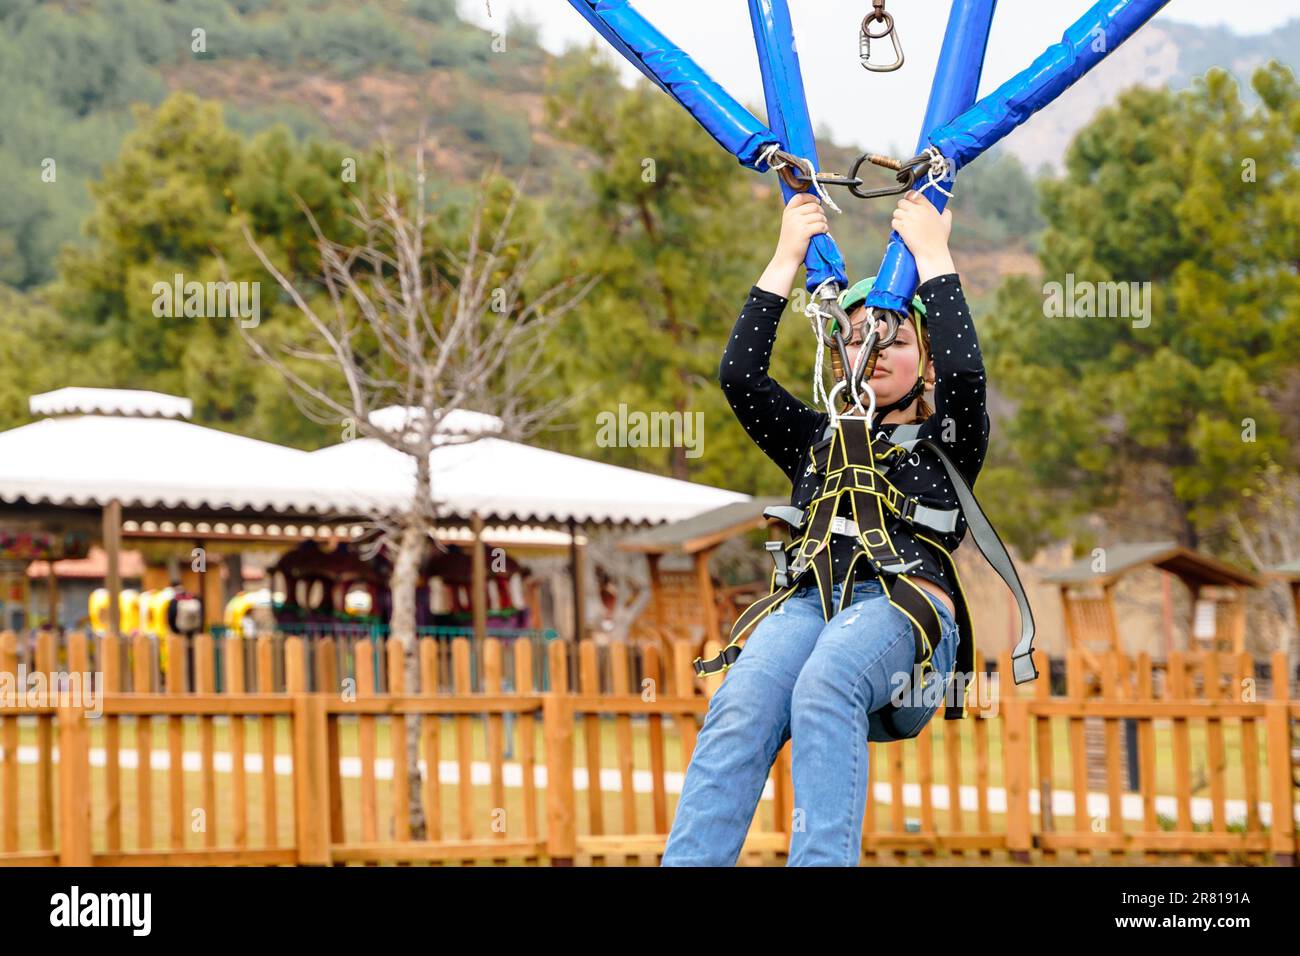 Une adolescente à l'adolescence, un sandow volant dans le parc d'attractions de corde. Équipement de harnais d'escalade, casque de sécurité sport vert. Course d'obstacle suspendu. Enfants enfants Banque D'Images